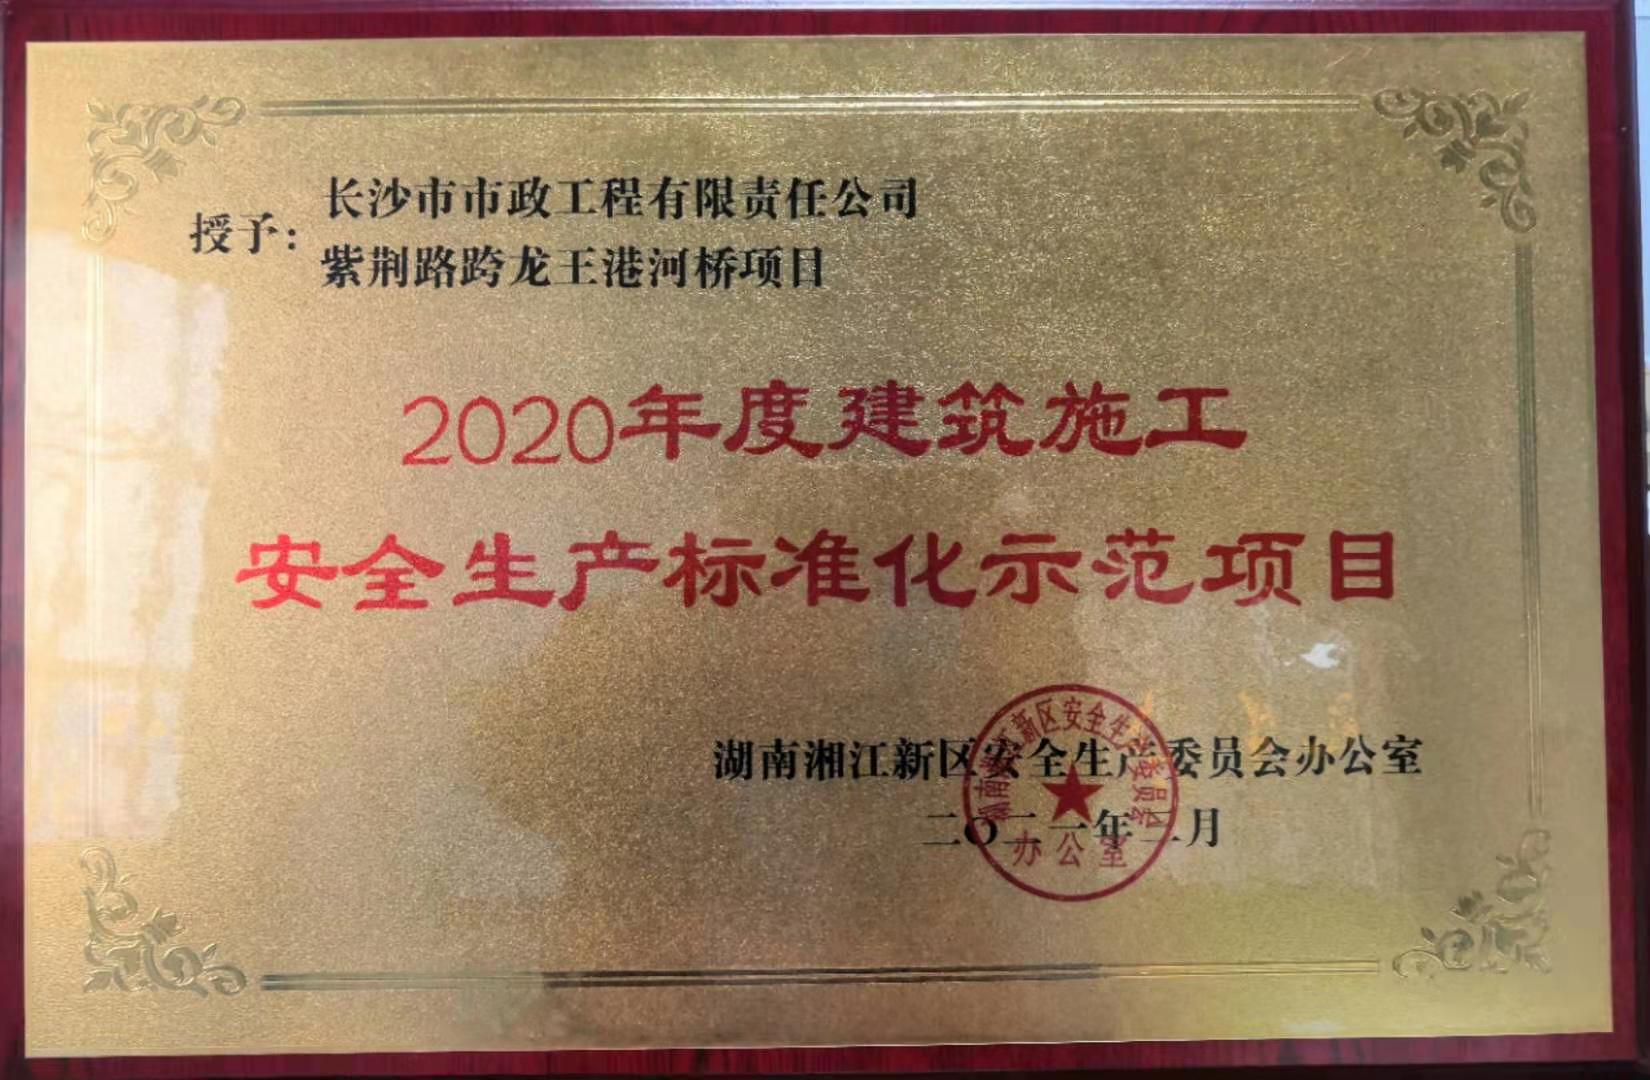 喜報 祝賀我司紫荊路跨龍王港河橋項目獲評2020年度湖南湘江新區建筑施工安全生產標準化示范項目